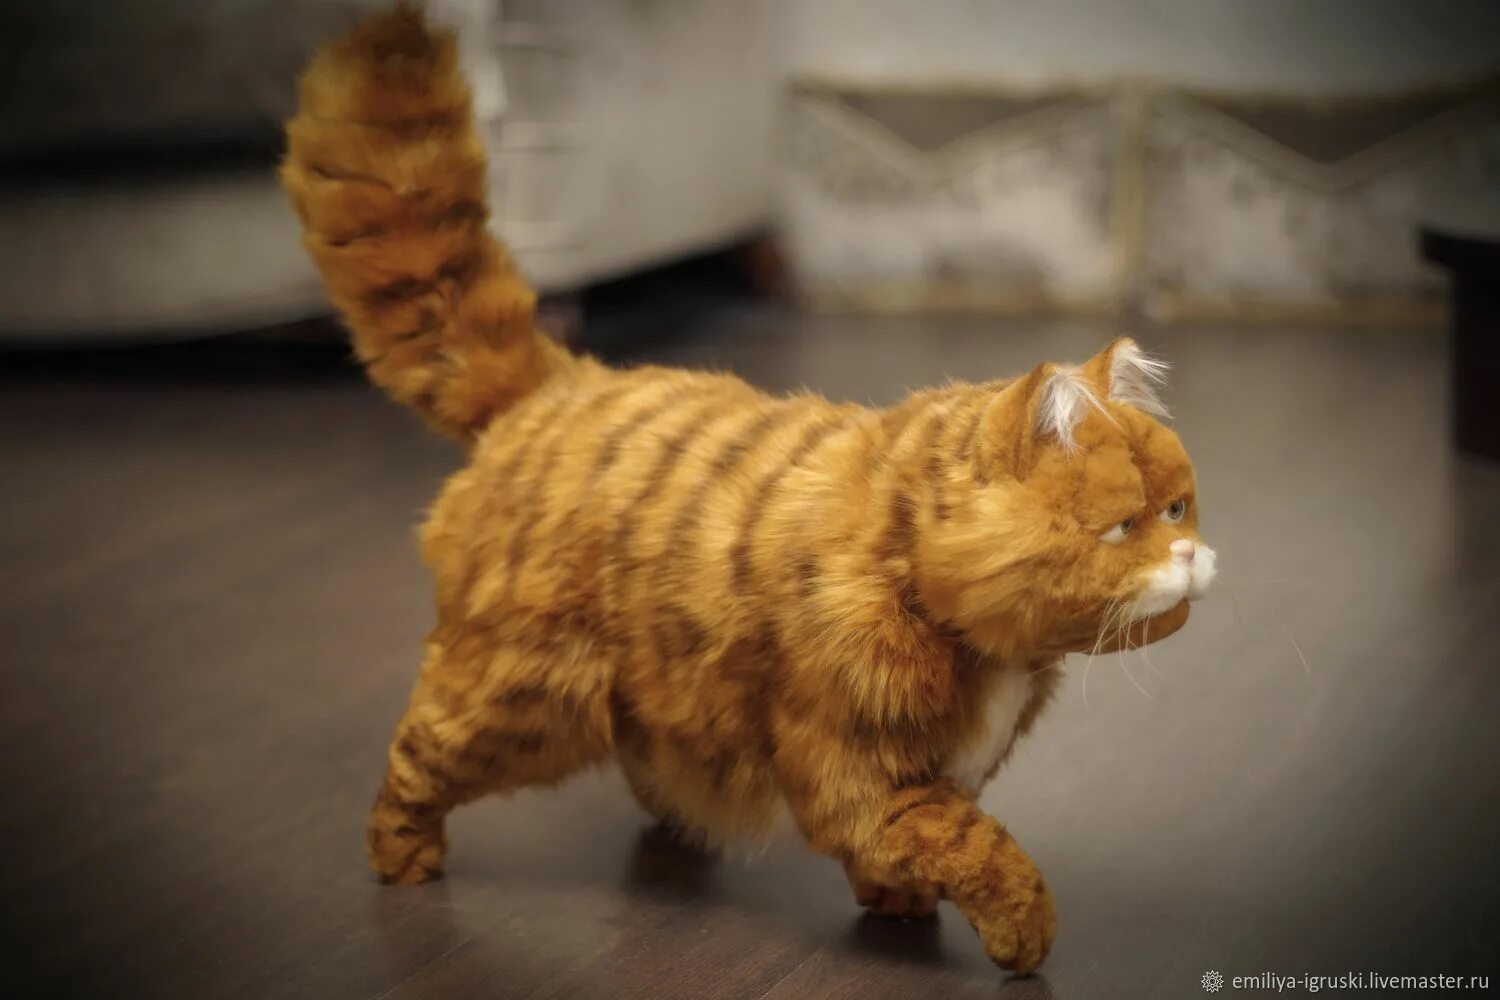 Игрушка реалистичный кот Гарфилд. Рыжий кот Гарфилд реалистичная игрушка. Кот Гарфилд мягкая игрушка в стиле Тедди. Кот реалистичный ручной работы игрушка. Гарфилд купить